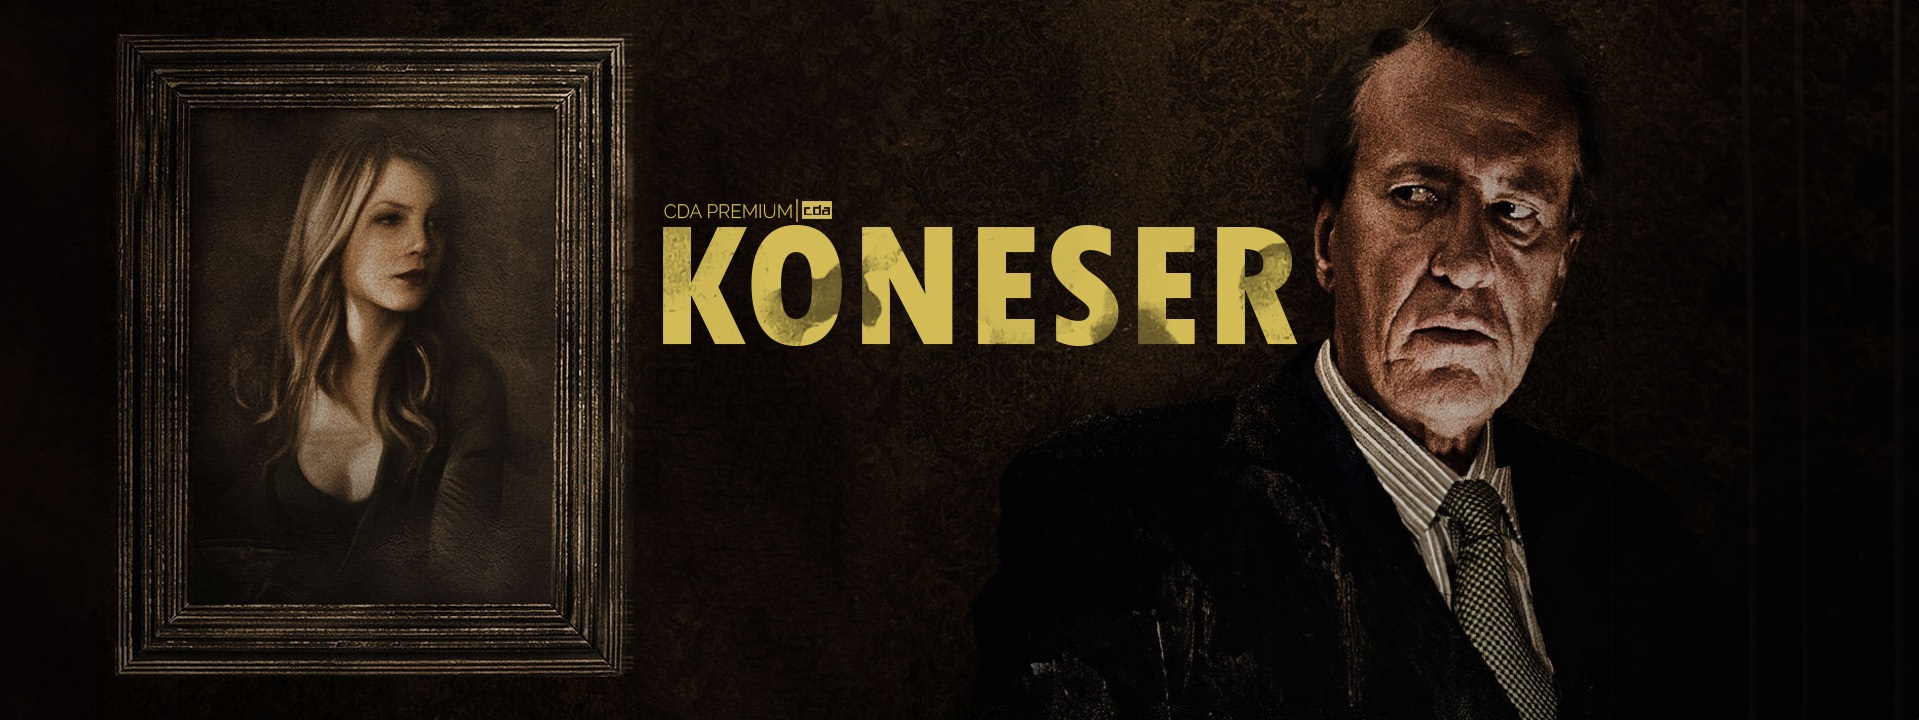 Koneser (2013) Lektor PL